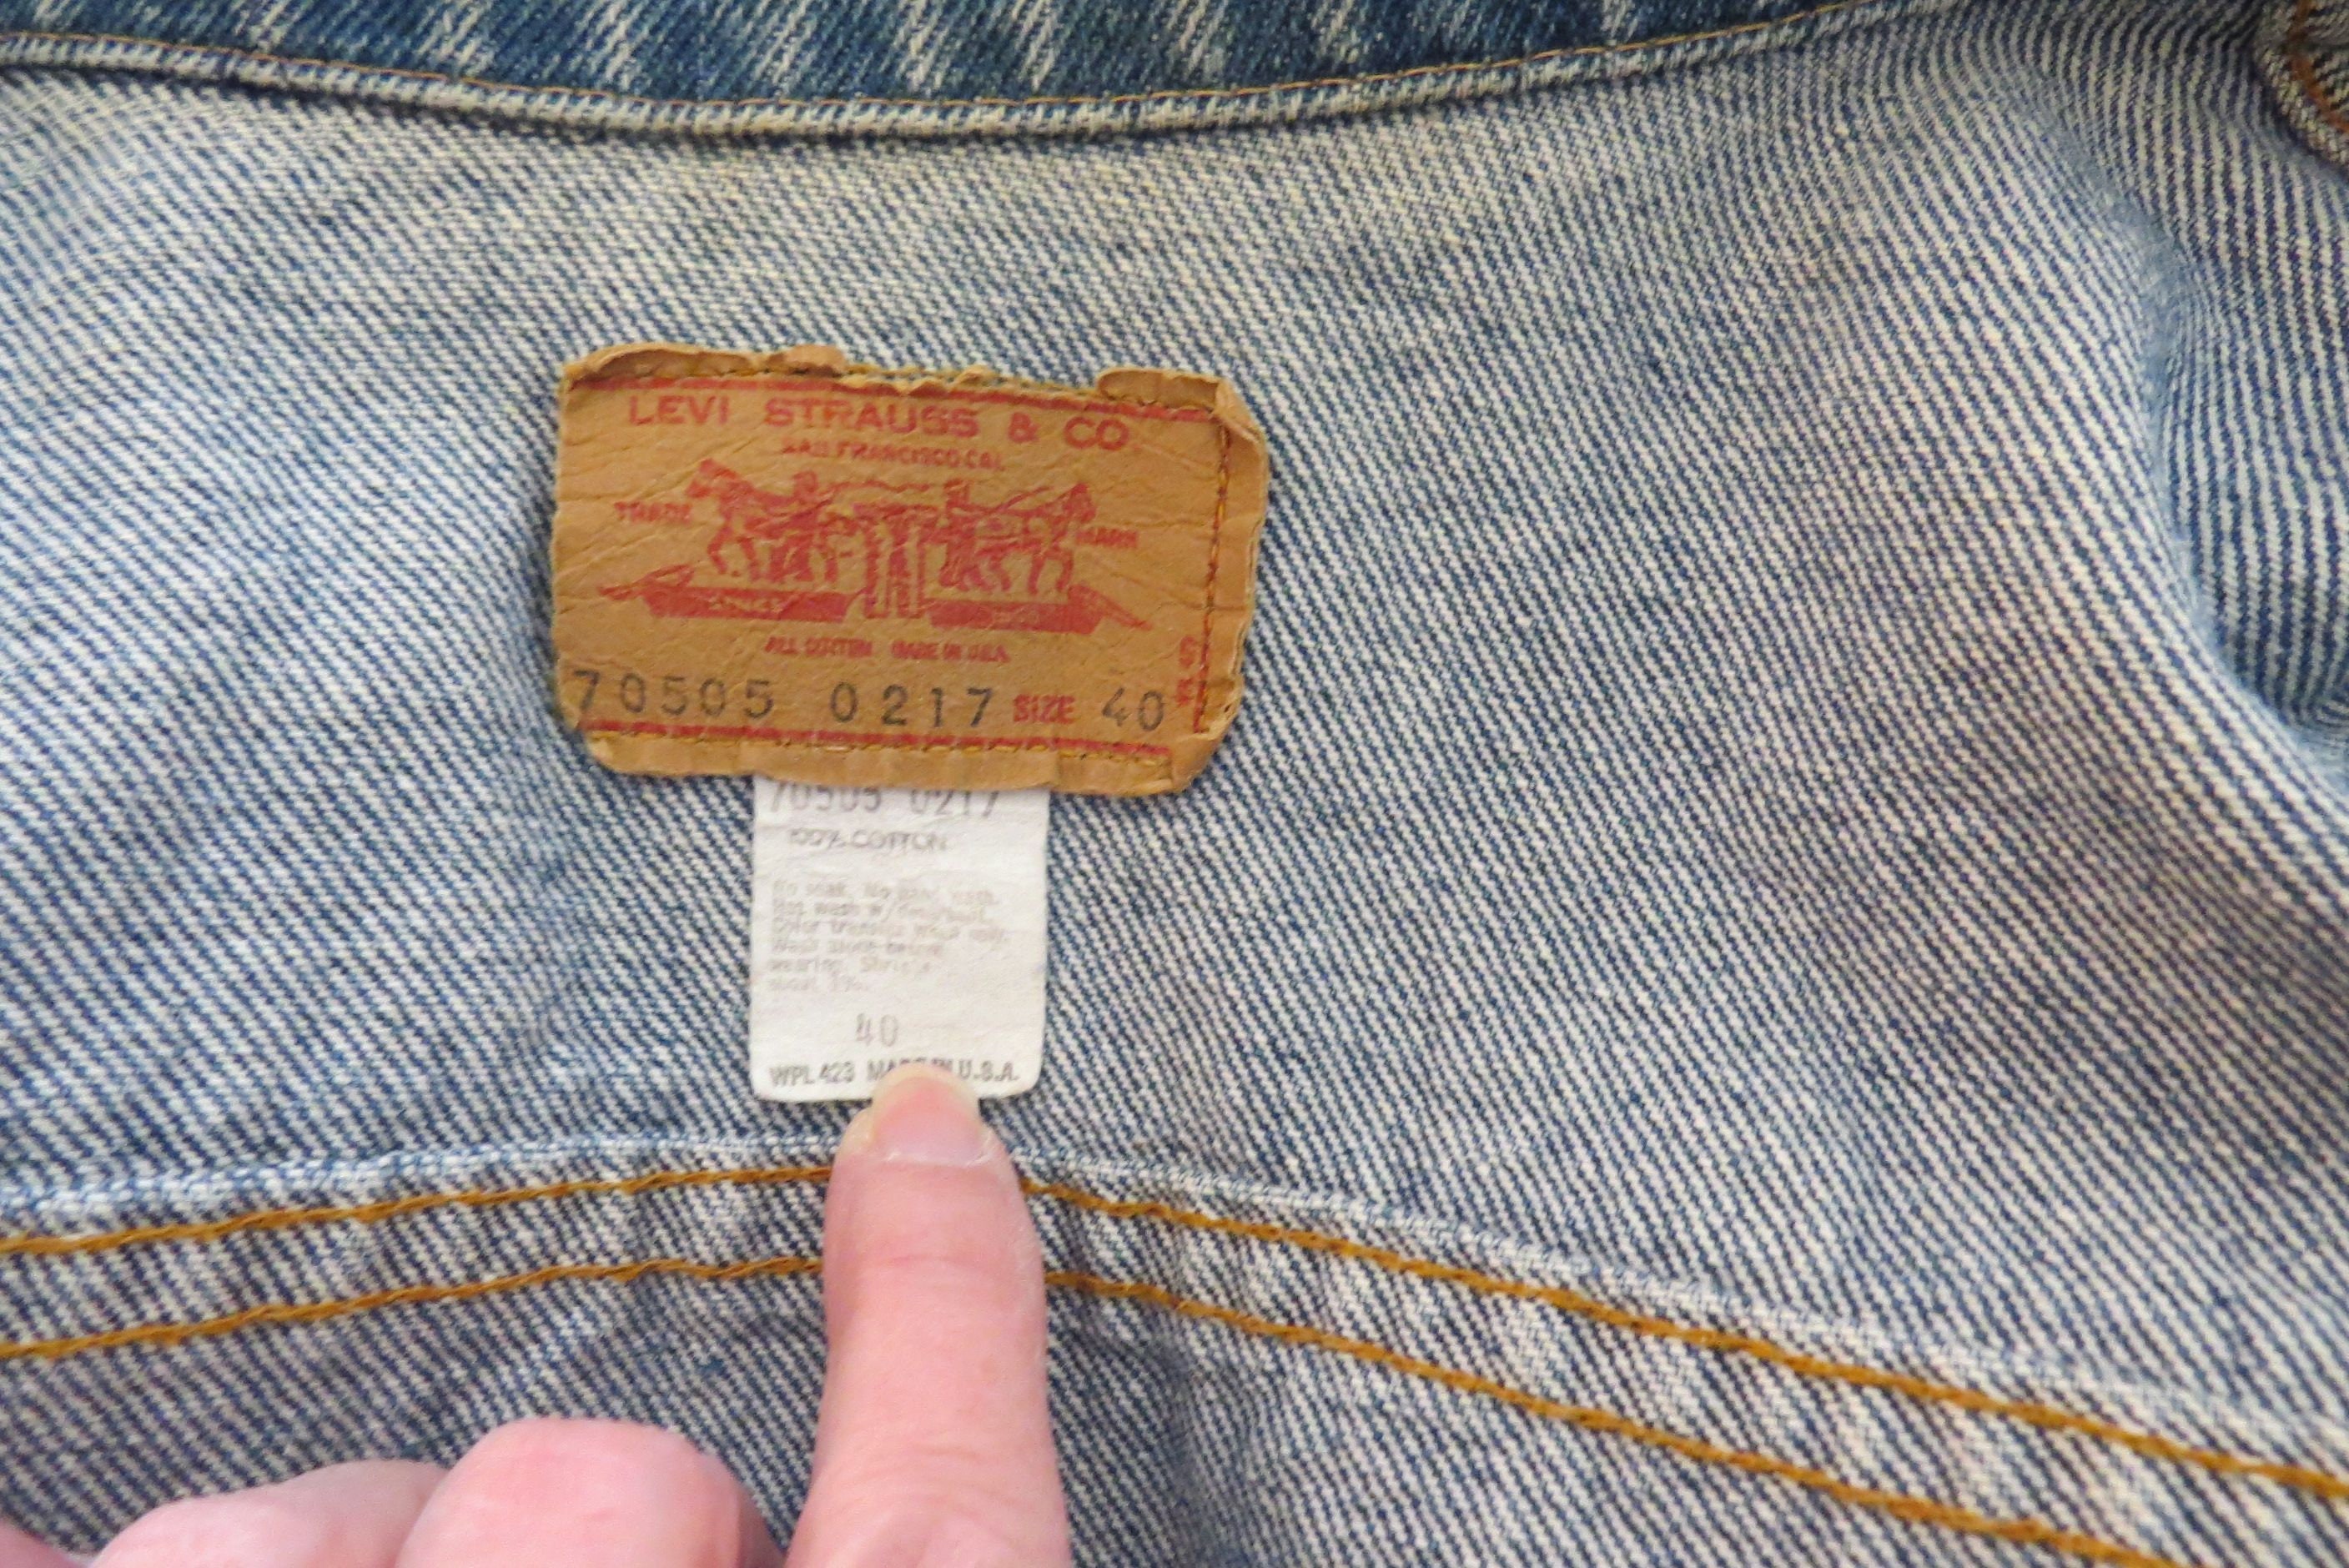 Vintage Levi Denim Jacket Big E Type III Size 40 70505 0217 - Etsy